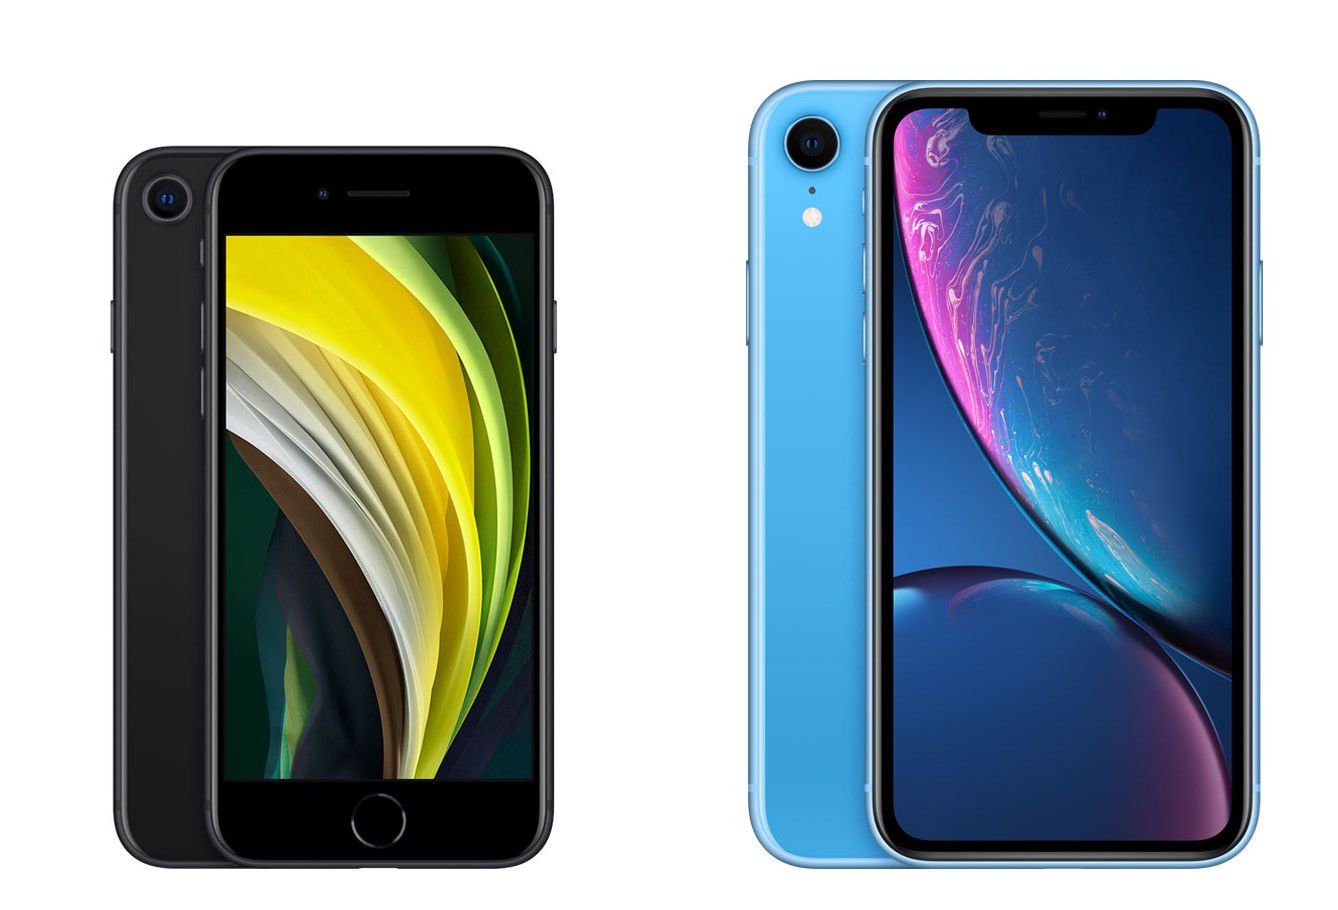 Welches Handy ist besser iPhone XS oder iPhone XR?